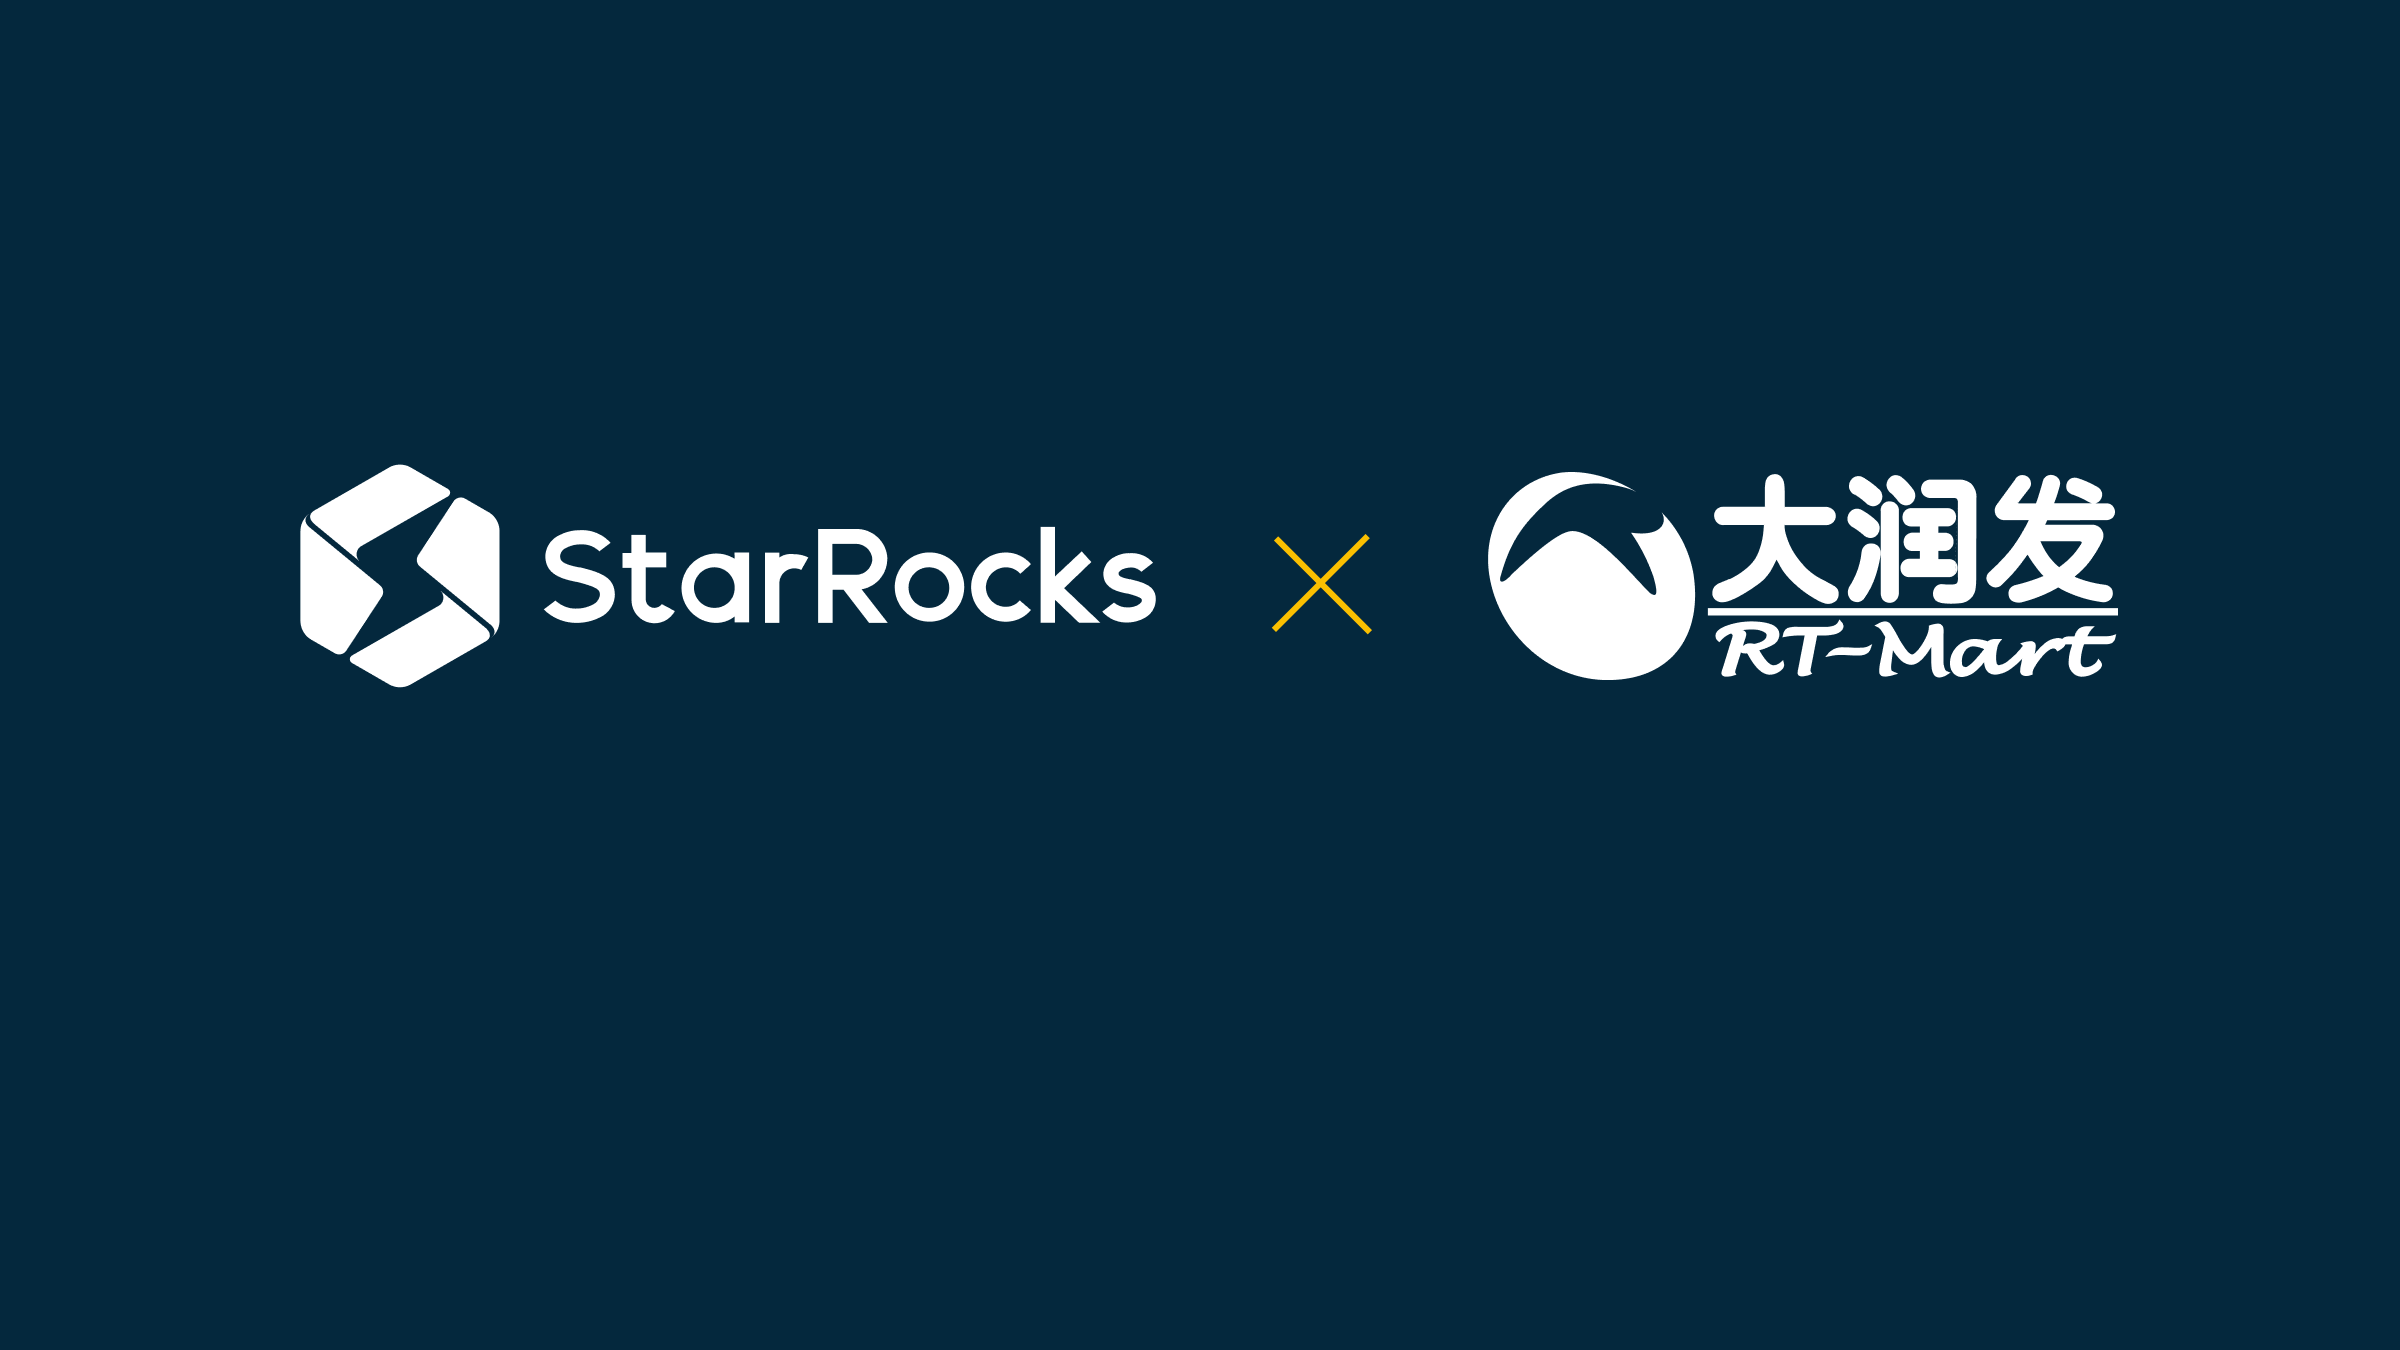 借力 StarRocks，"陆战之王" 大润发如何在零售业数字化转型中抢占先机？